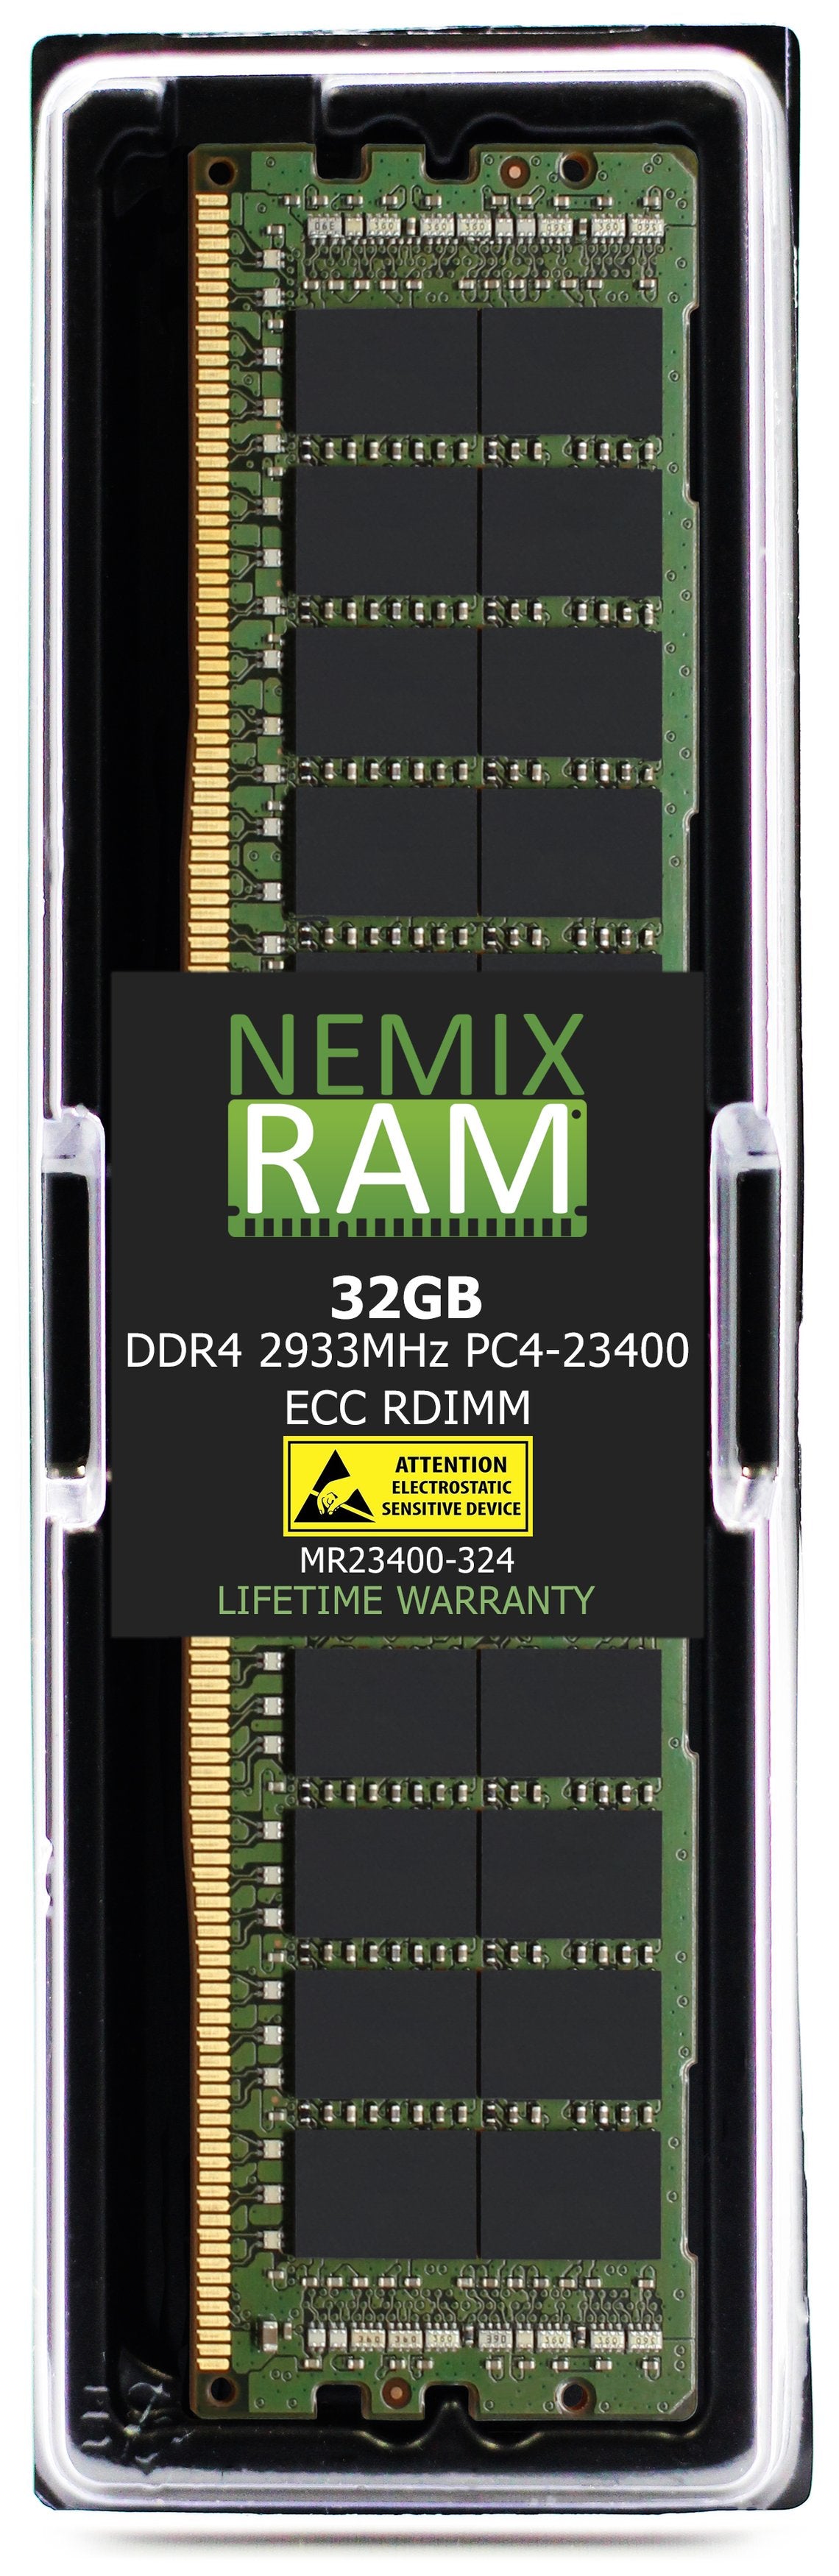 Hynix HMA84GR7CJR4N-WM 32GB DDR4 2933MHZ PC4-23400 RDIMM Compatible Memory Module